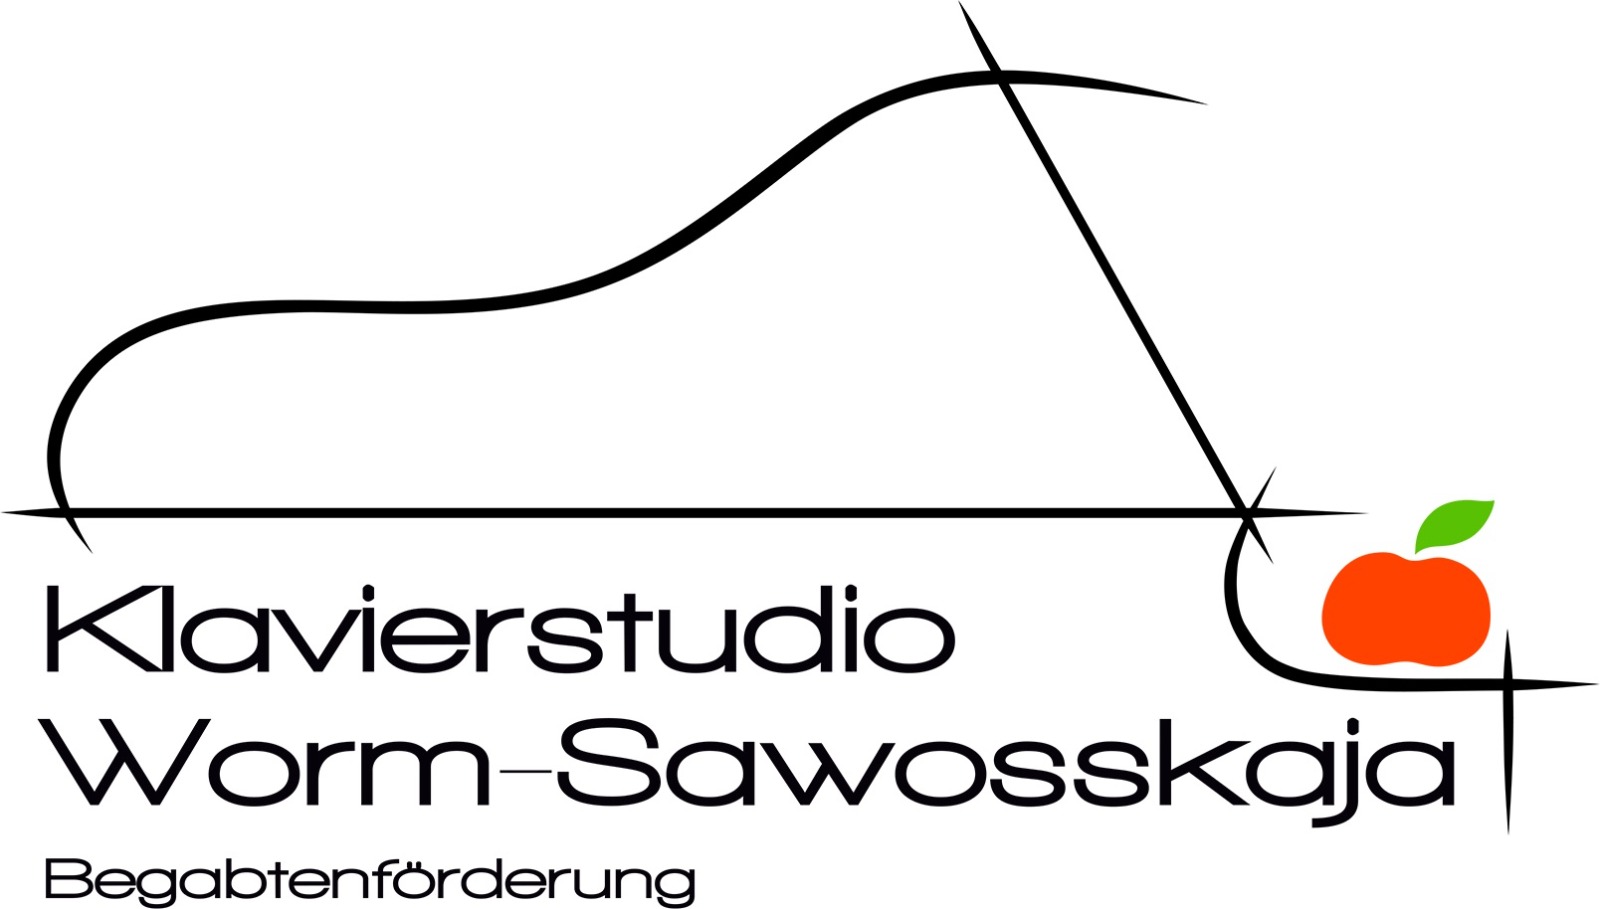 Klavierstudio Worm-Sawosskaja für begabte Kinder und Jugendliche